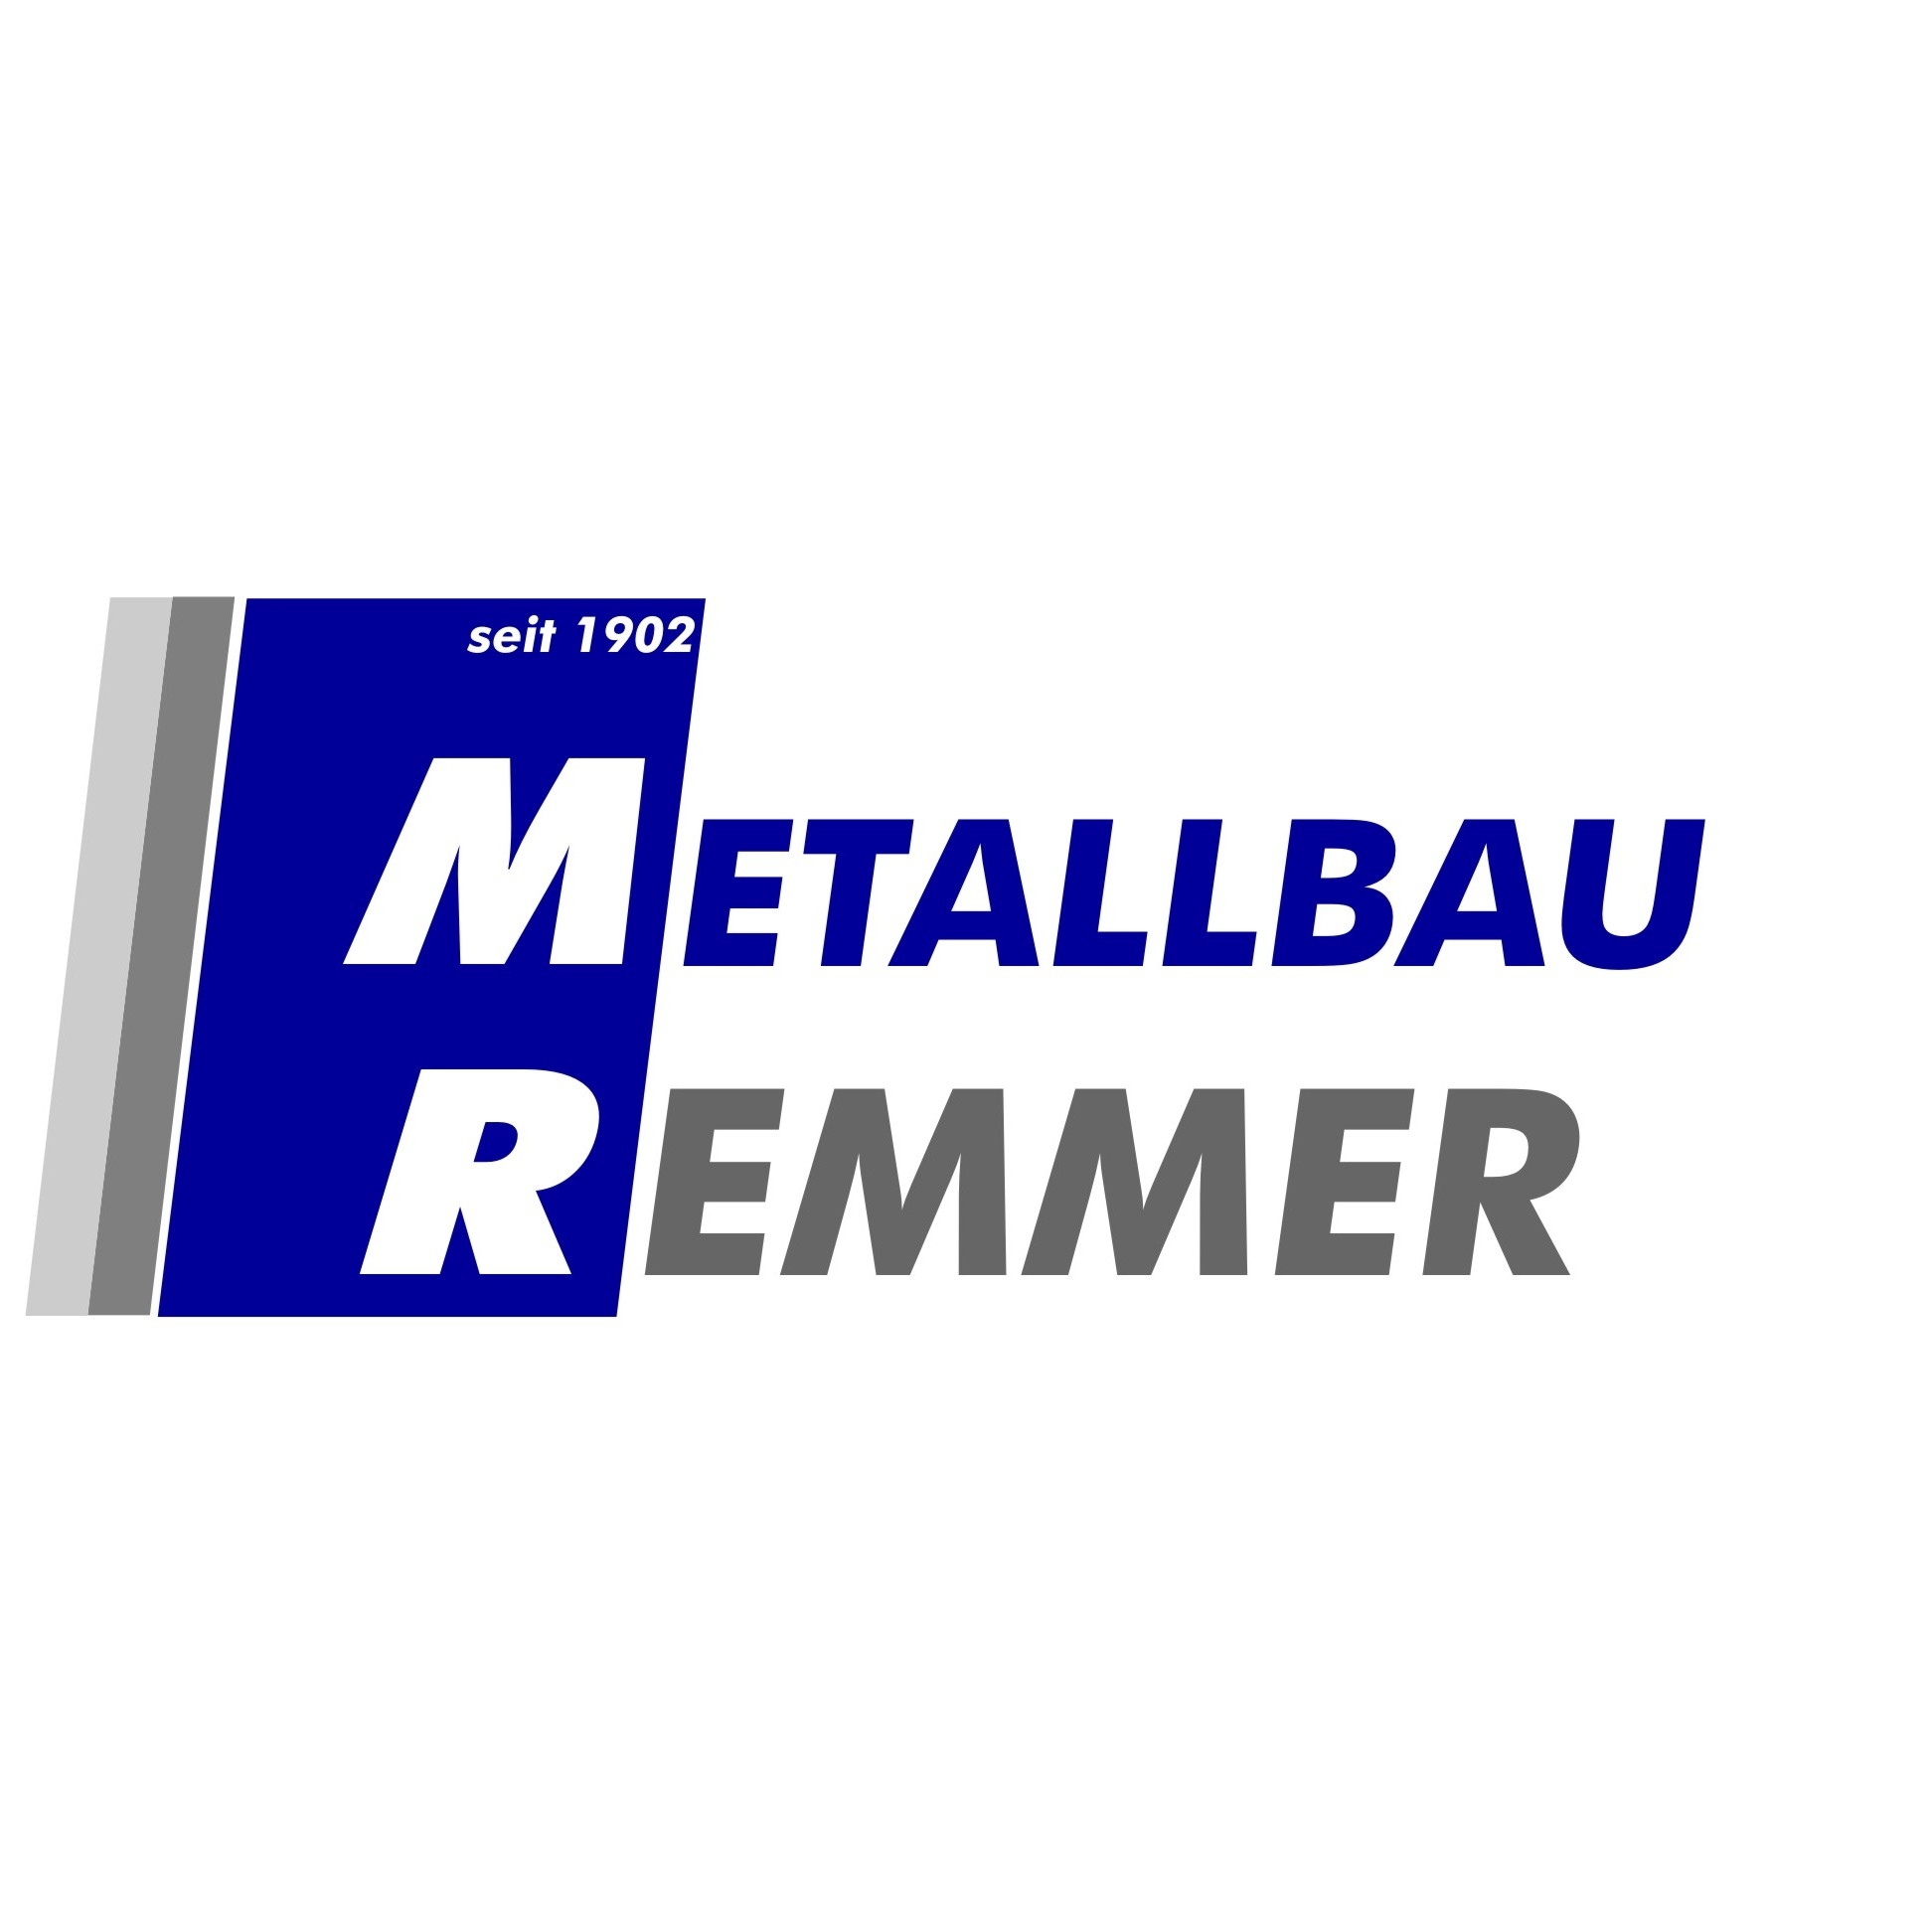 Logo Metallbau Remmer